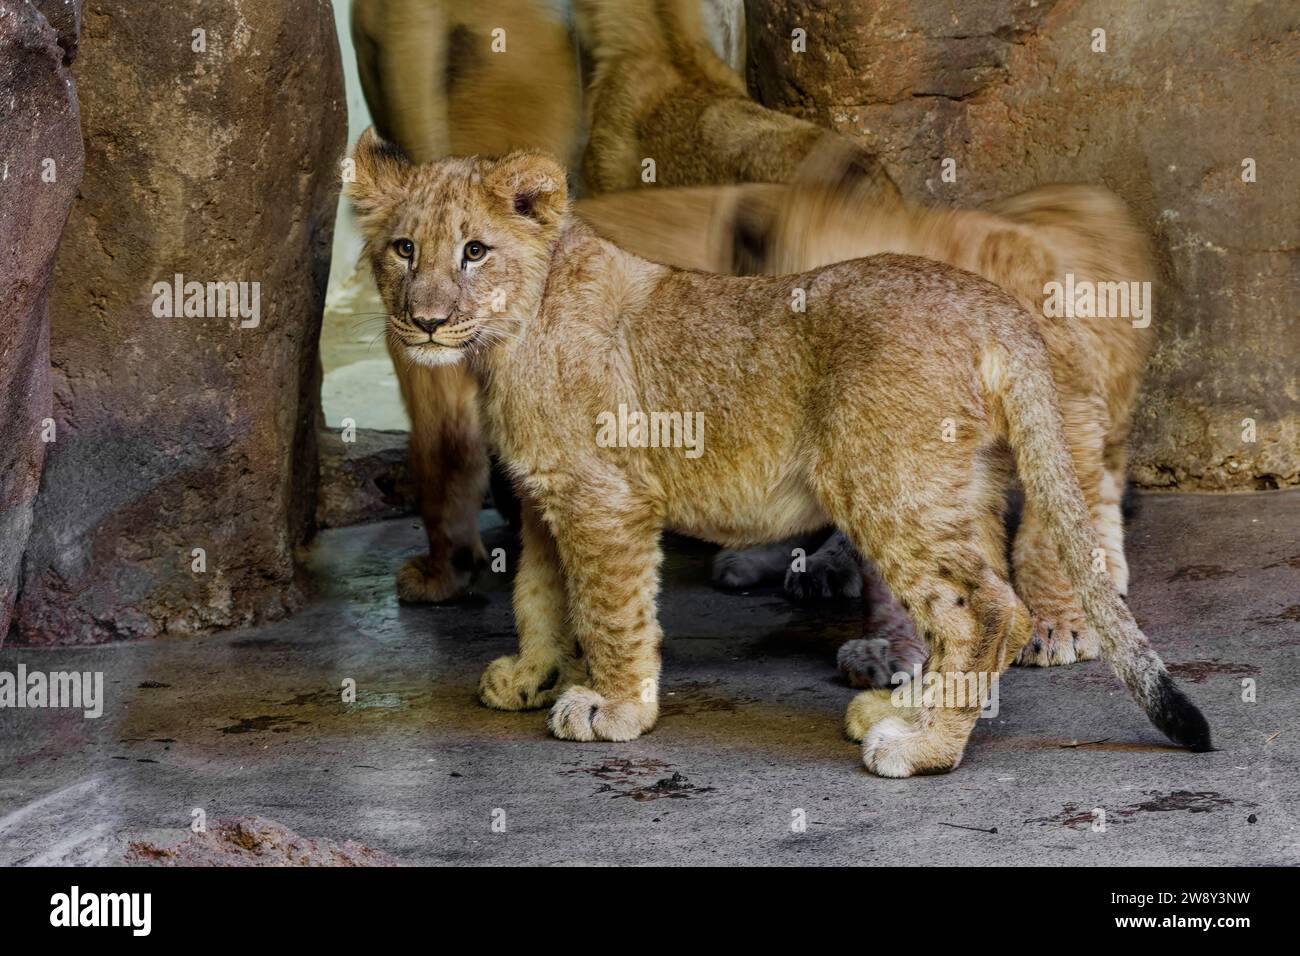 Lion africain (Panthera leo) jeune, captif, distribution Afrique Banque D'Images